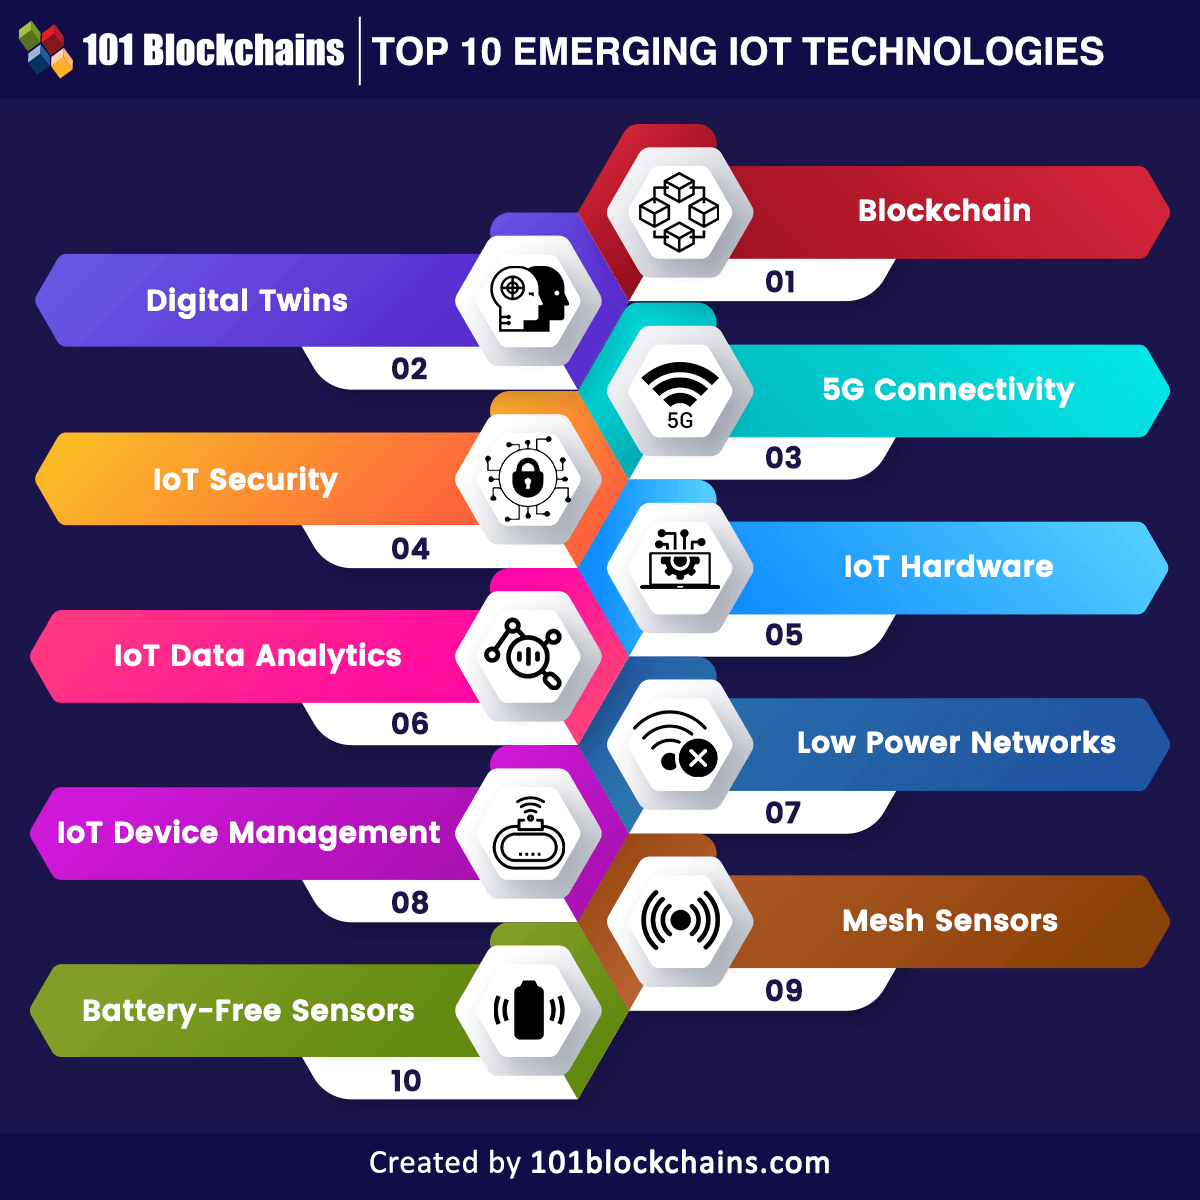 Top IoT Technologies